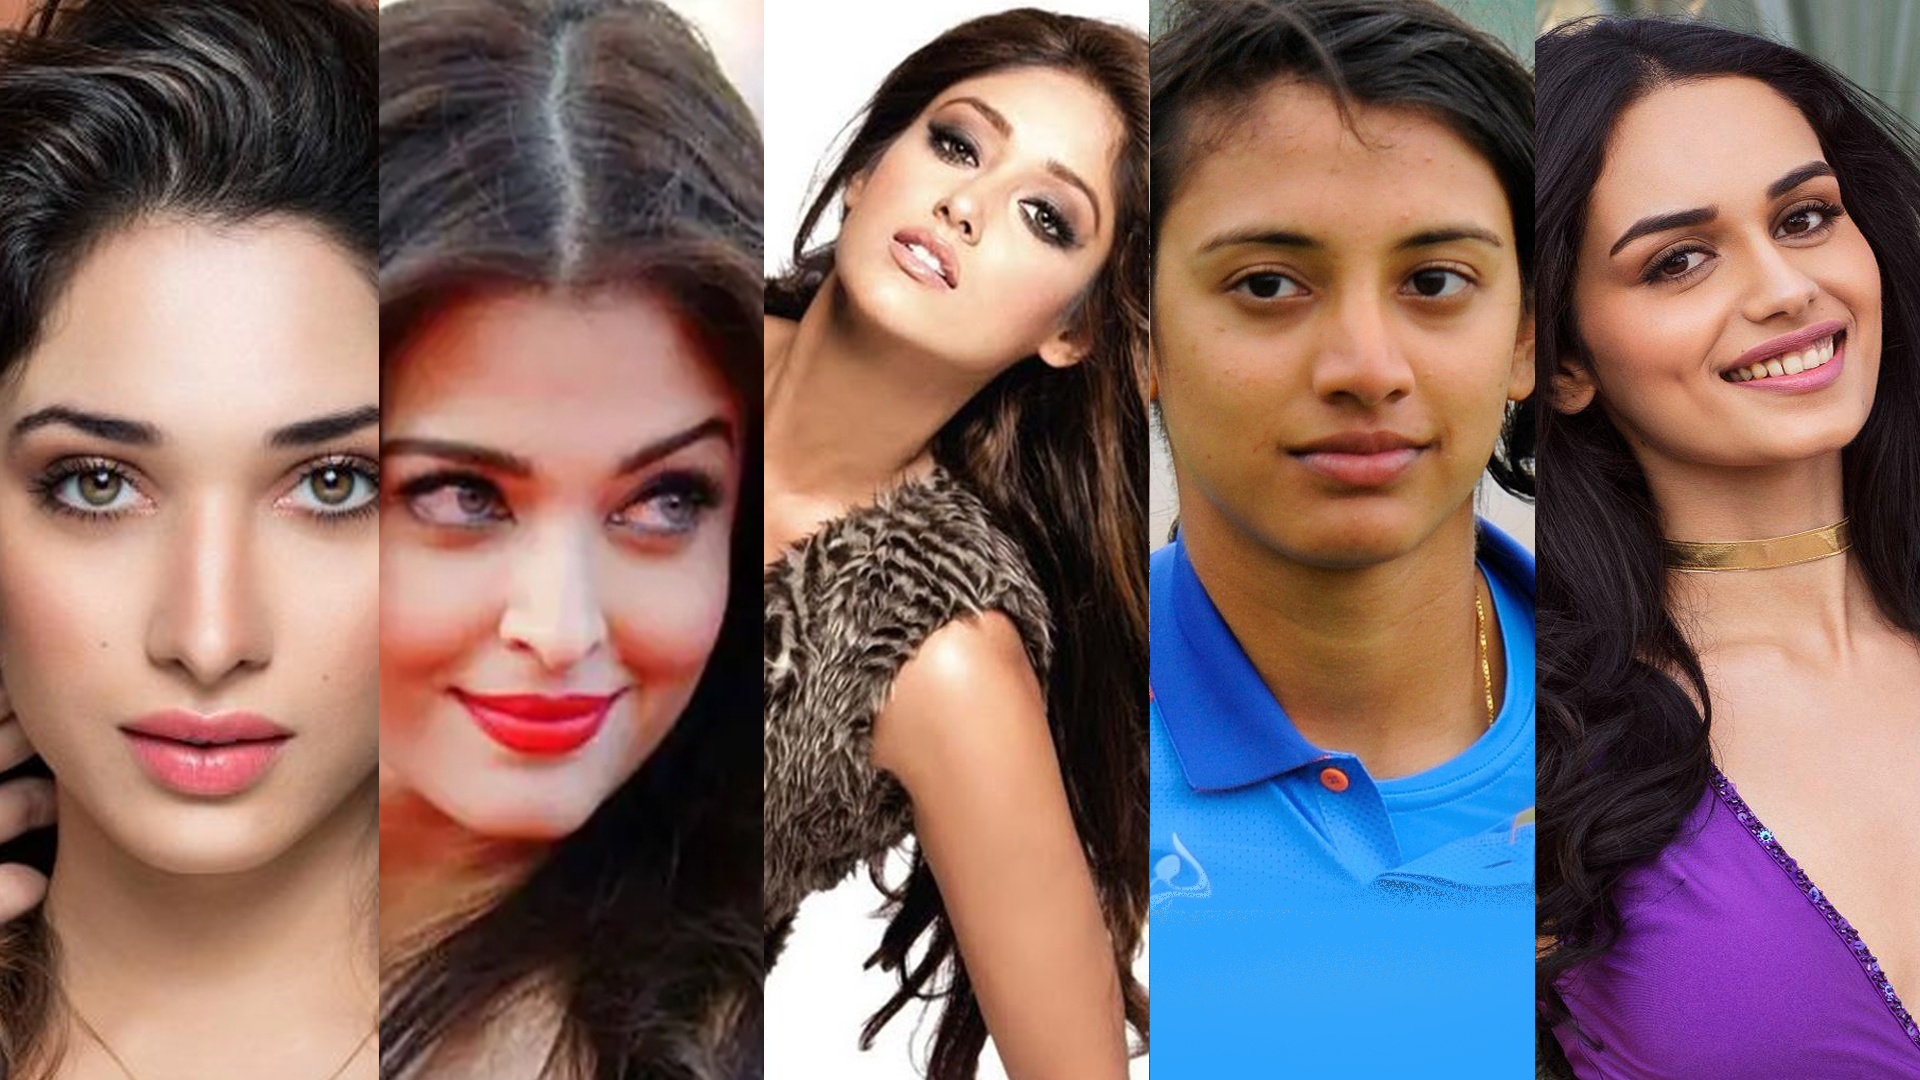 Hindu Lugai Xxx - à¤­à¤¾à¤°à¤¤ à¤•à¥€ 20 à¤¸à¤¬à¤¸à¥‡ à¤–à¥‚à¤¬à¤¸à¥‚à¤°à¤¤ à¤®à¤¹à¤¿à¤²à¤¾à¤à¤‚ - 20 Most Beautiful Women in India - à¤¹à¤¿à¤‚à¤¦à¥€  à¤²à¤µà¤°à¥à¤¸